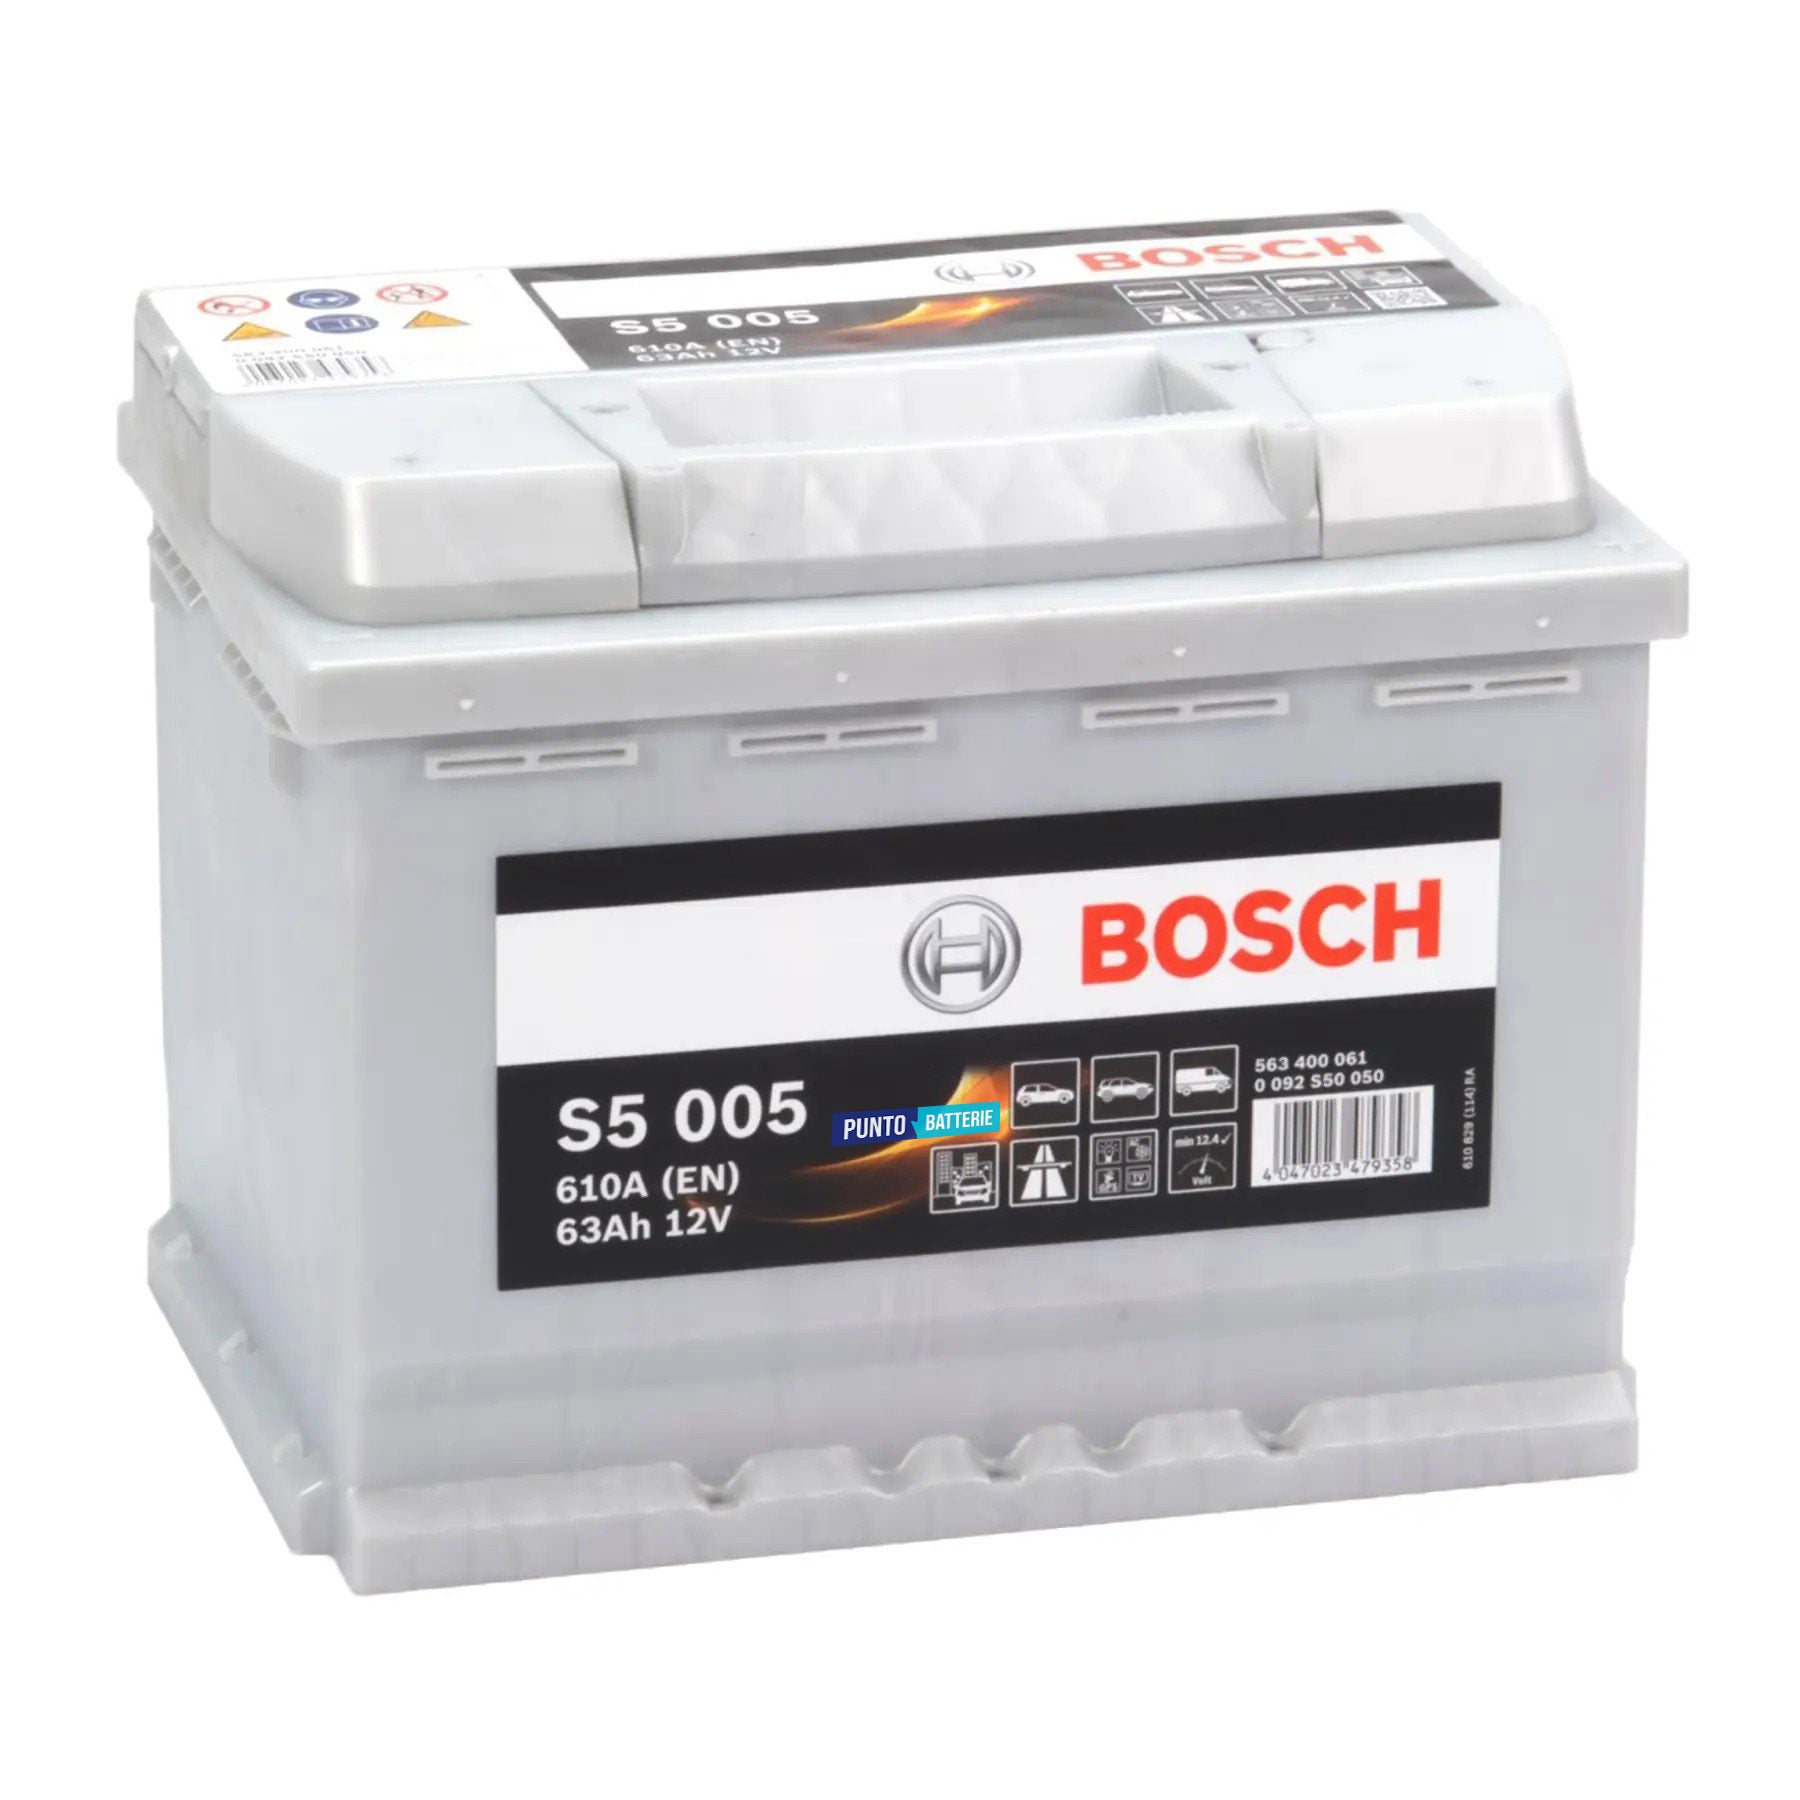 Batteria originale Bosch S5 S5 005, dimensioni 242 x 175 x 190, polo positivo a destra, 12 volt, 63 amperora, 610 ampere. Batteria per auto e veicoli leggeri.